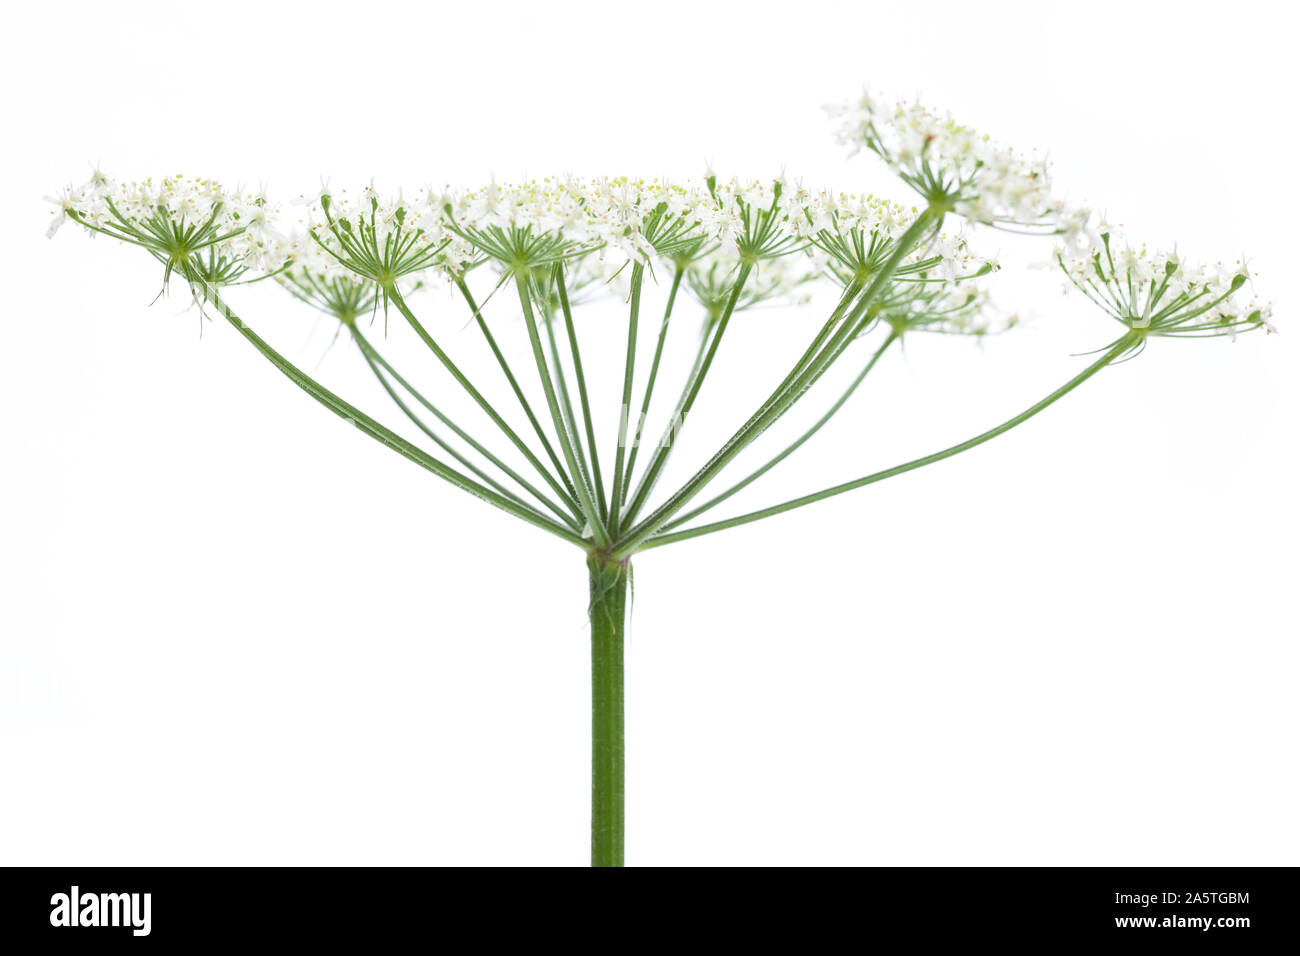 Wies scharfkraut (Heracleum sphondylium) - Blume Seite Stockfoto